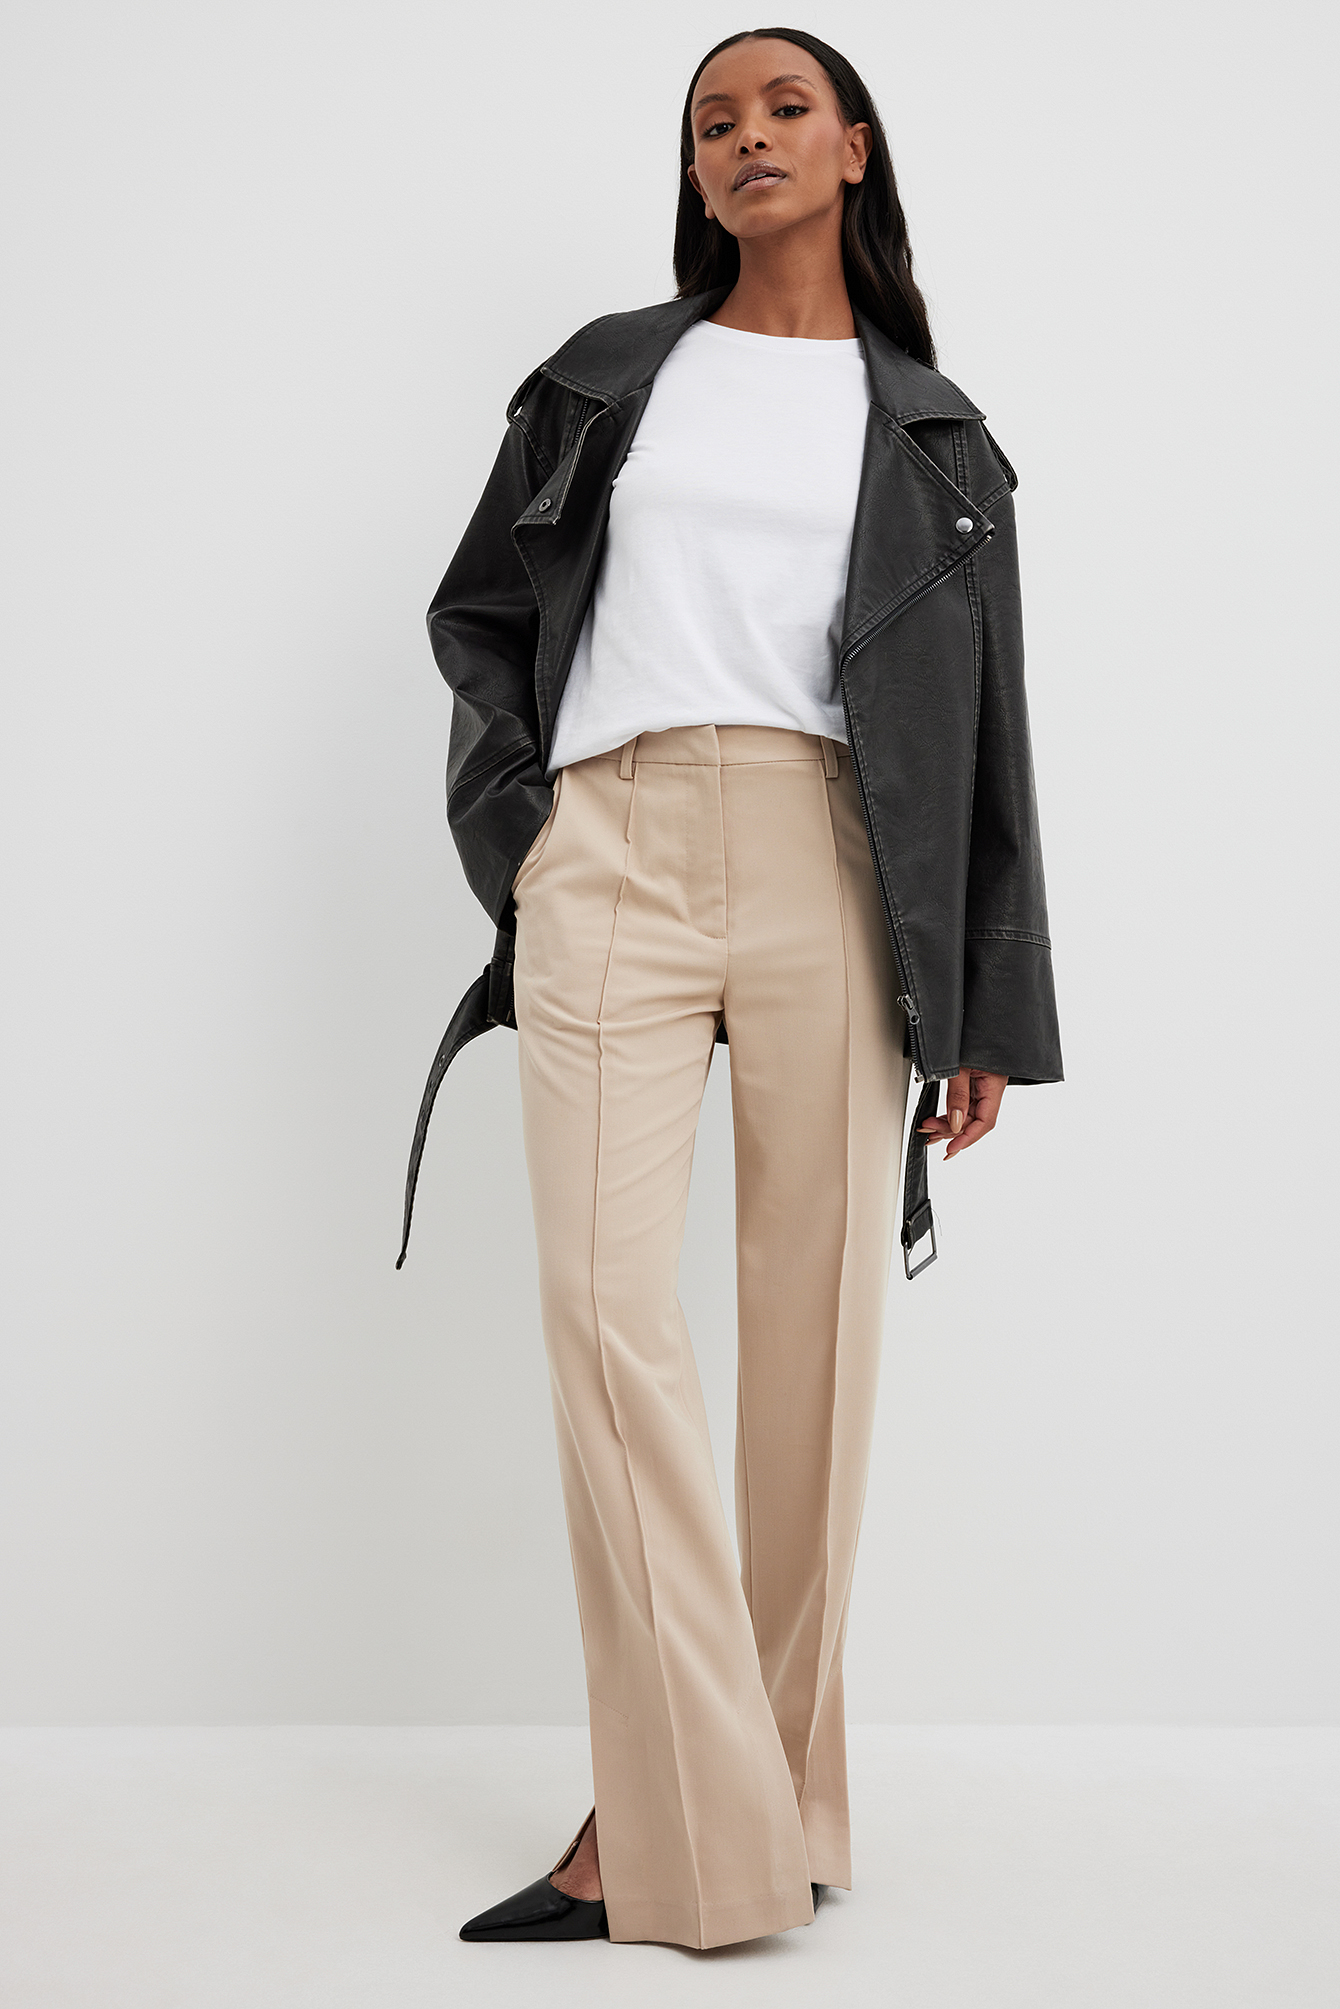 Formal Beige Women Suit Pants Set 3 Pcs Blazer+Vest+Trousers Tailored  Business Office Lady Coat Casual Streetwear костюм женский - AliExpress